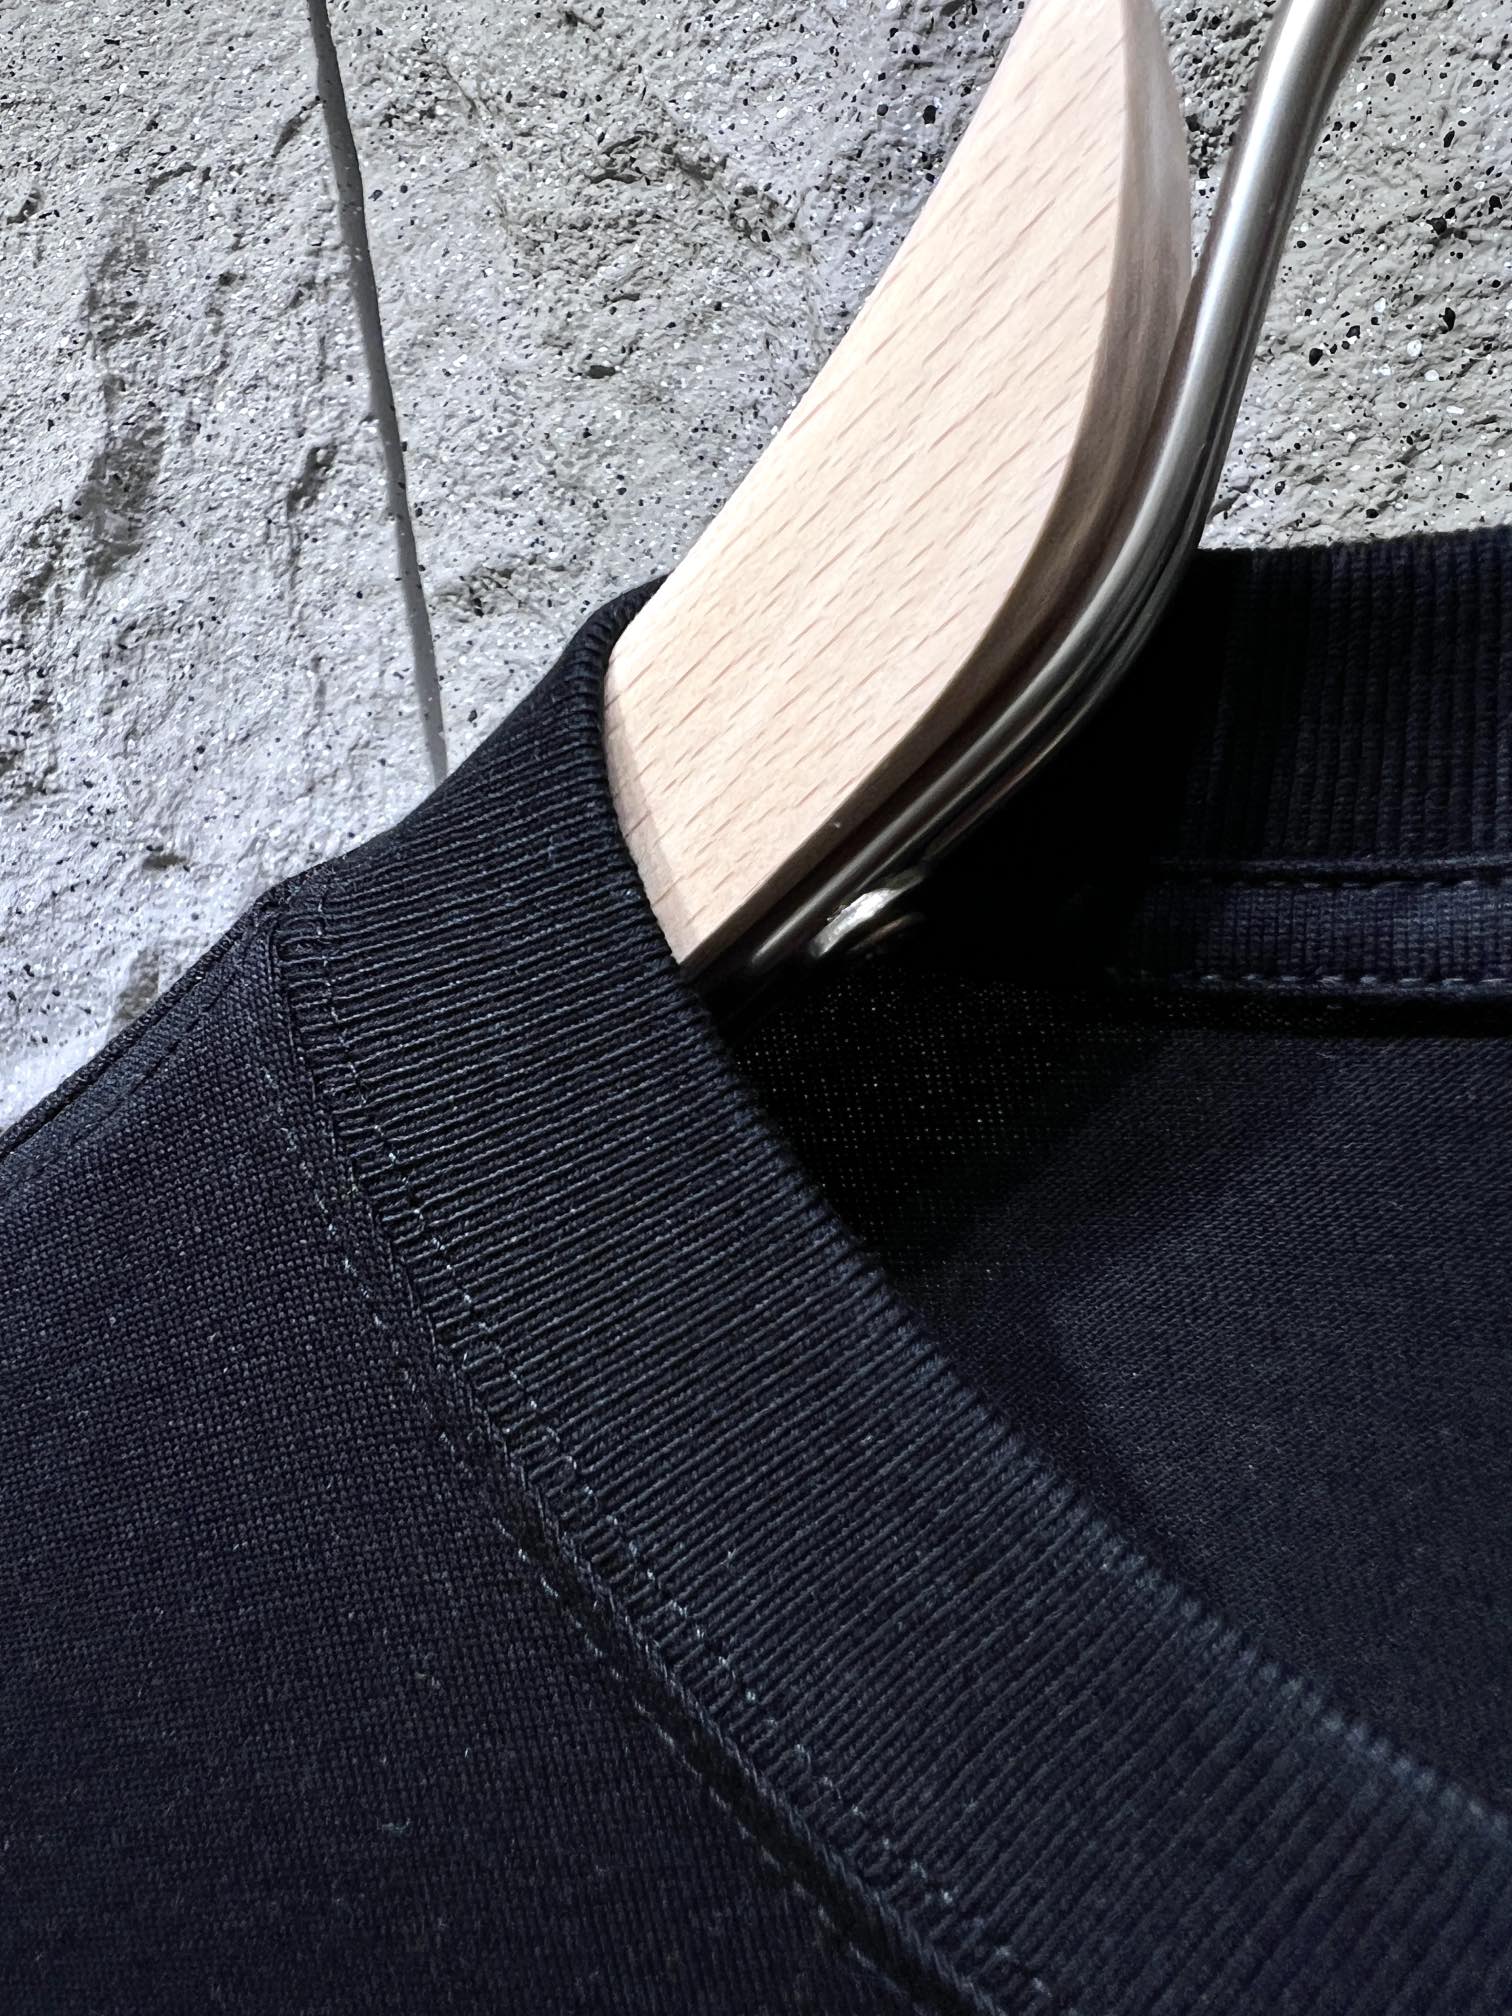 バレンシアガtシャツ サイズ感偽物 純綿 トップス 半袖 ゆったり 柔らかい 期間限定品 ファッション ブラック_2